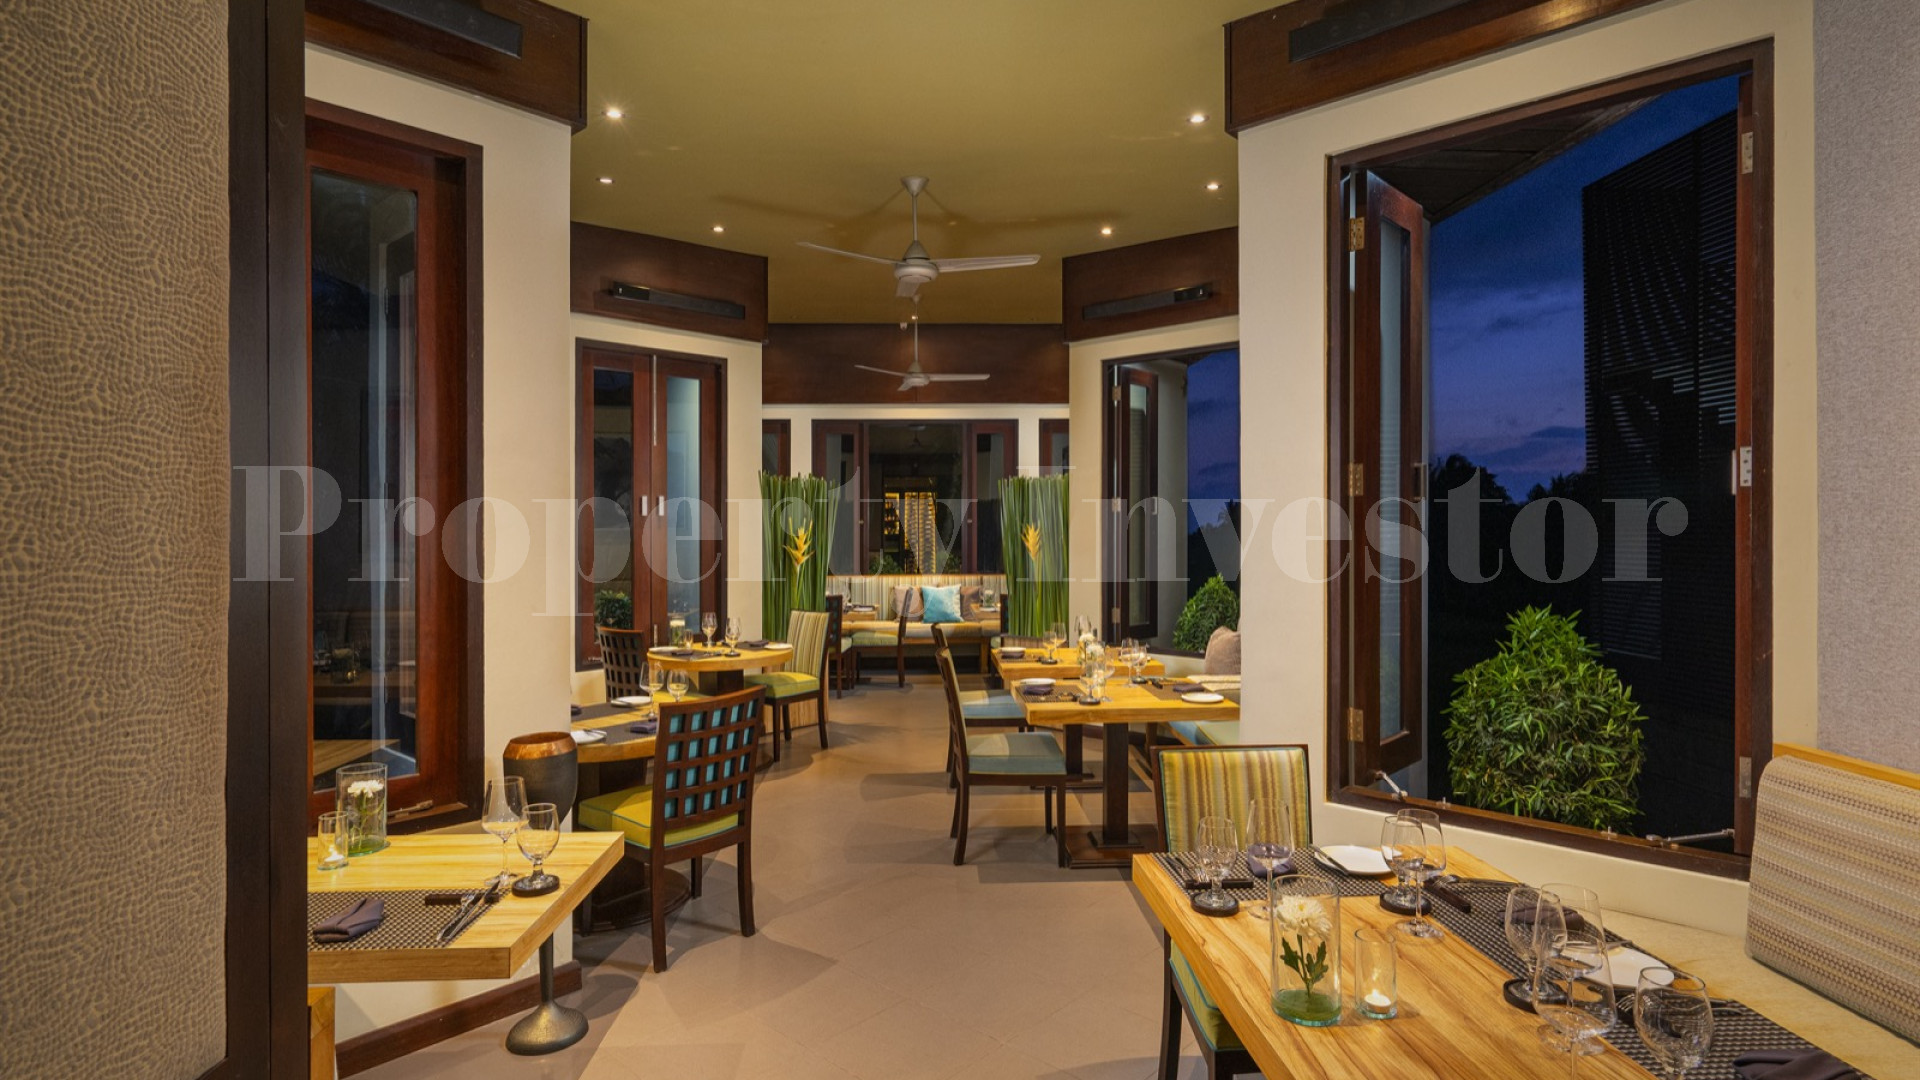 Продаётся отмеченный наградами бутик отель на 8 номеров и ресторан изысканной кухни в Убуде, Бали